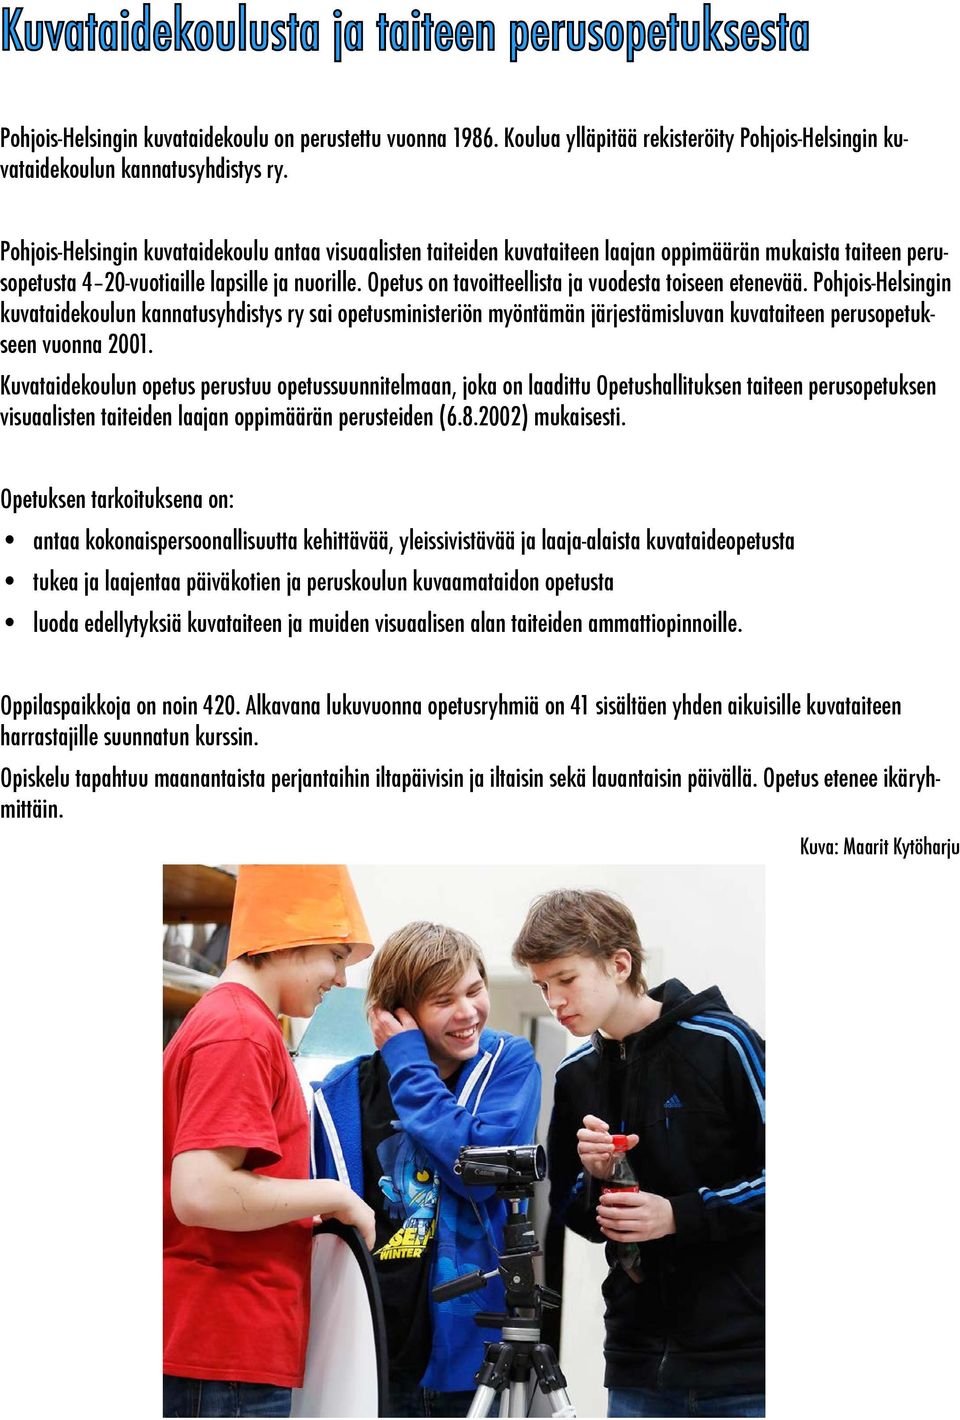 Opetus on tavoitteellista ja vuodesta toiseen etenevää. Pohjois-Helsingin kuvataidekoulun kannatusyhdistys ry sai opetusministeriön myöntämän järjestämisluvan kuvataiteen perusopetukseen vuonna 2001.